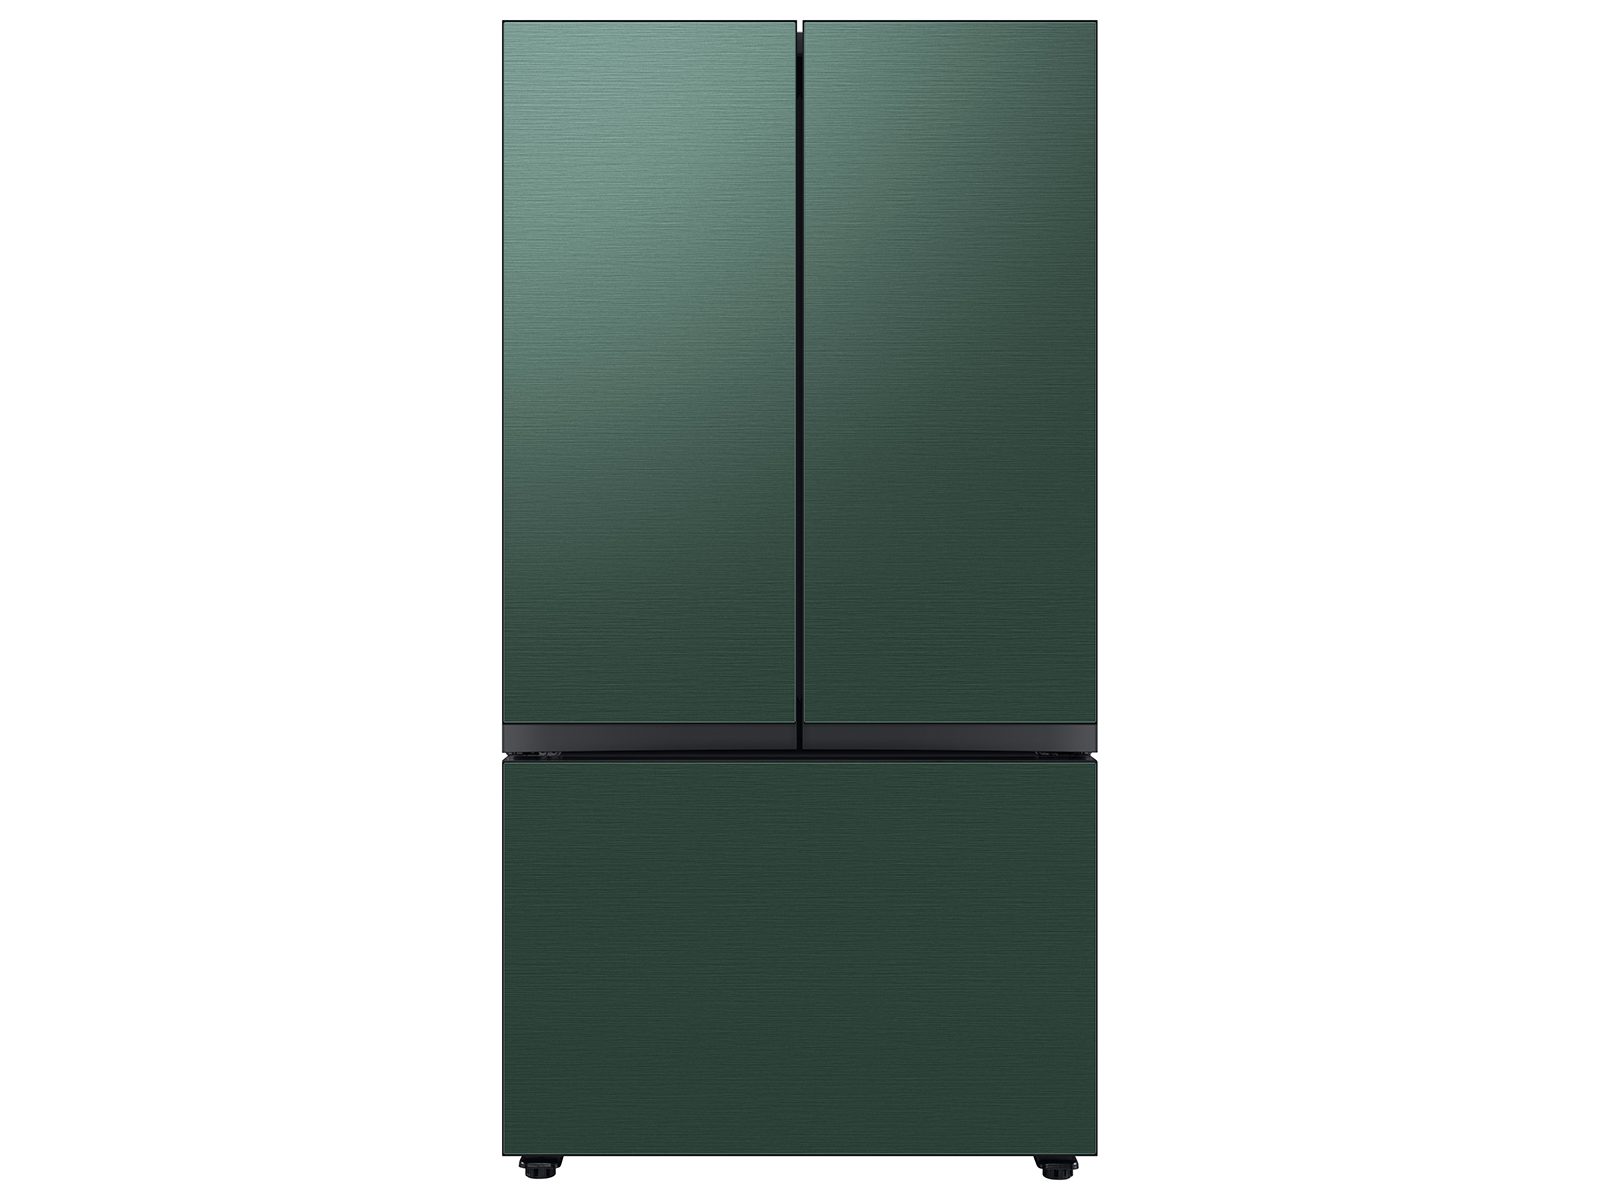 Bespoke 3-Door French Door Refrigerator (30 cu. ft.) with Beverage Center&trade; in Emerald Green Steel